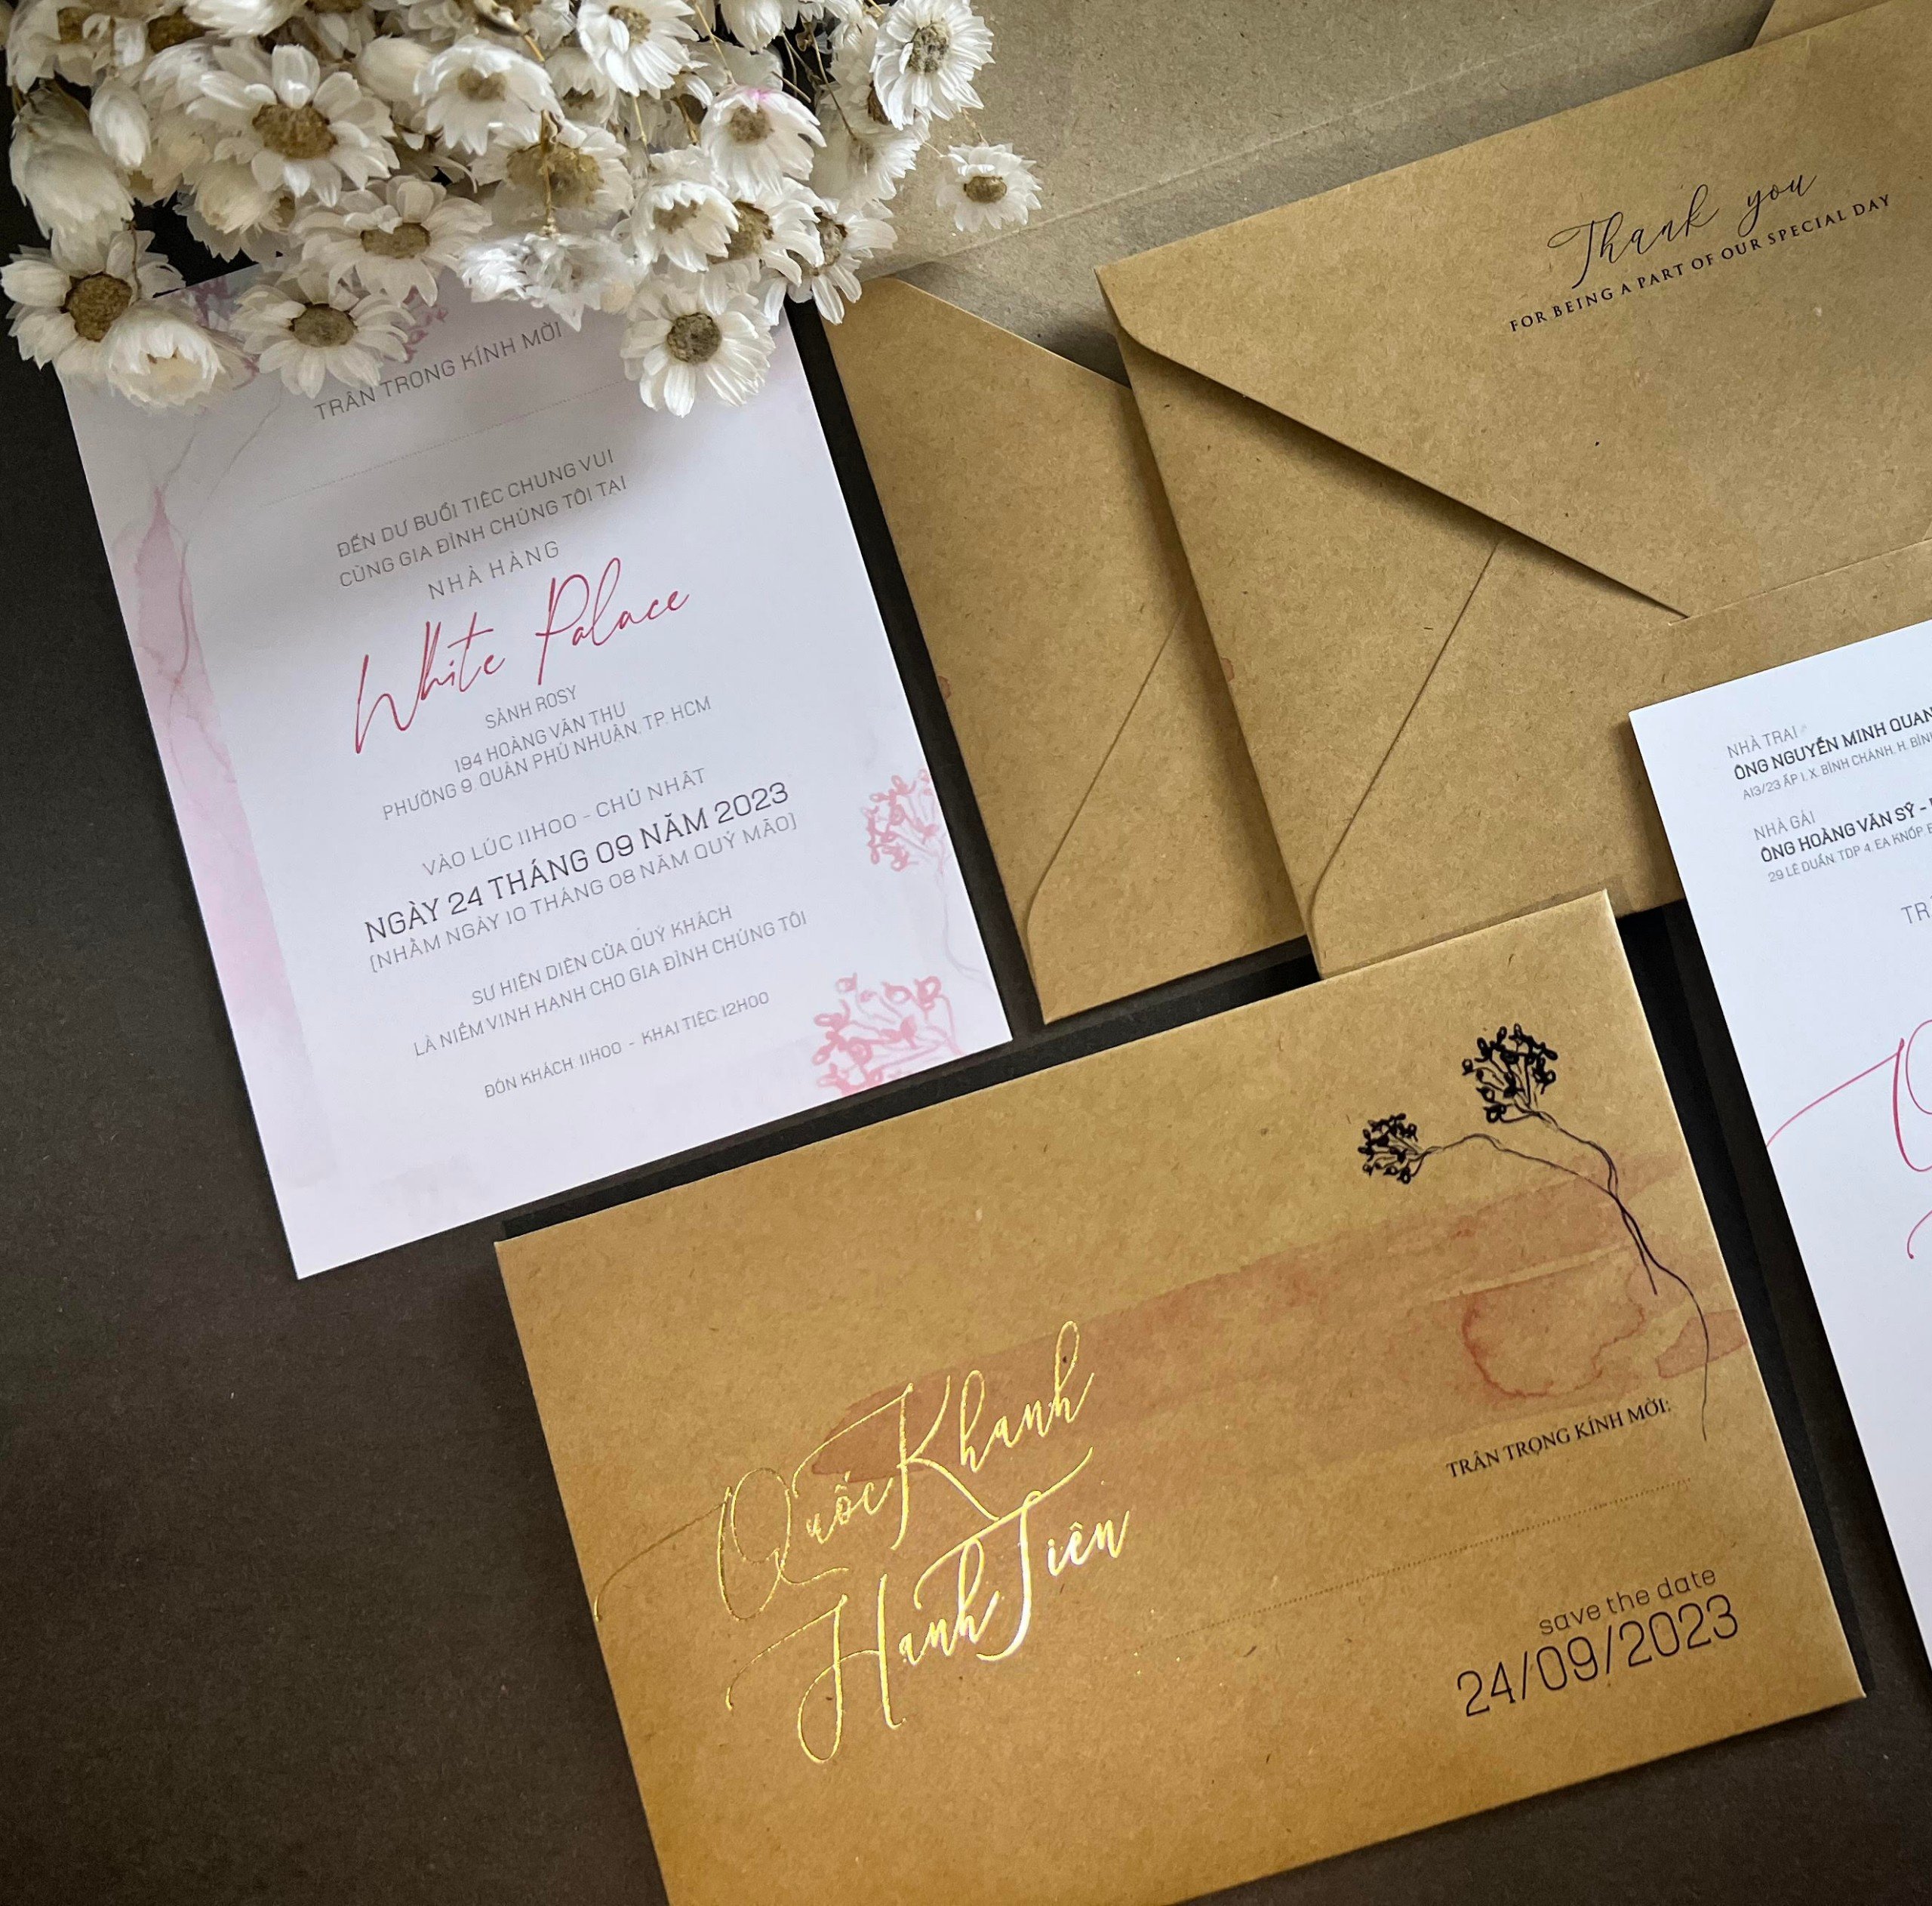 Thiệp cưới sang trọng màu rose gold SSCK13-PH - Mẫu Thiệp Cưới Đẹp Giá Rẻ -  In Nhanh - Uy Tín - Chất Lượng Tại TPHCM